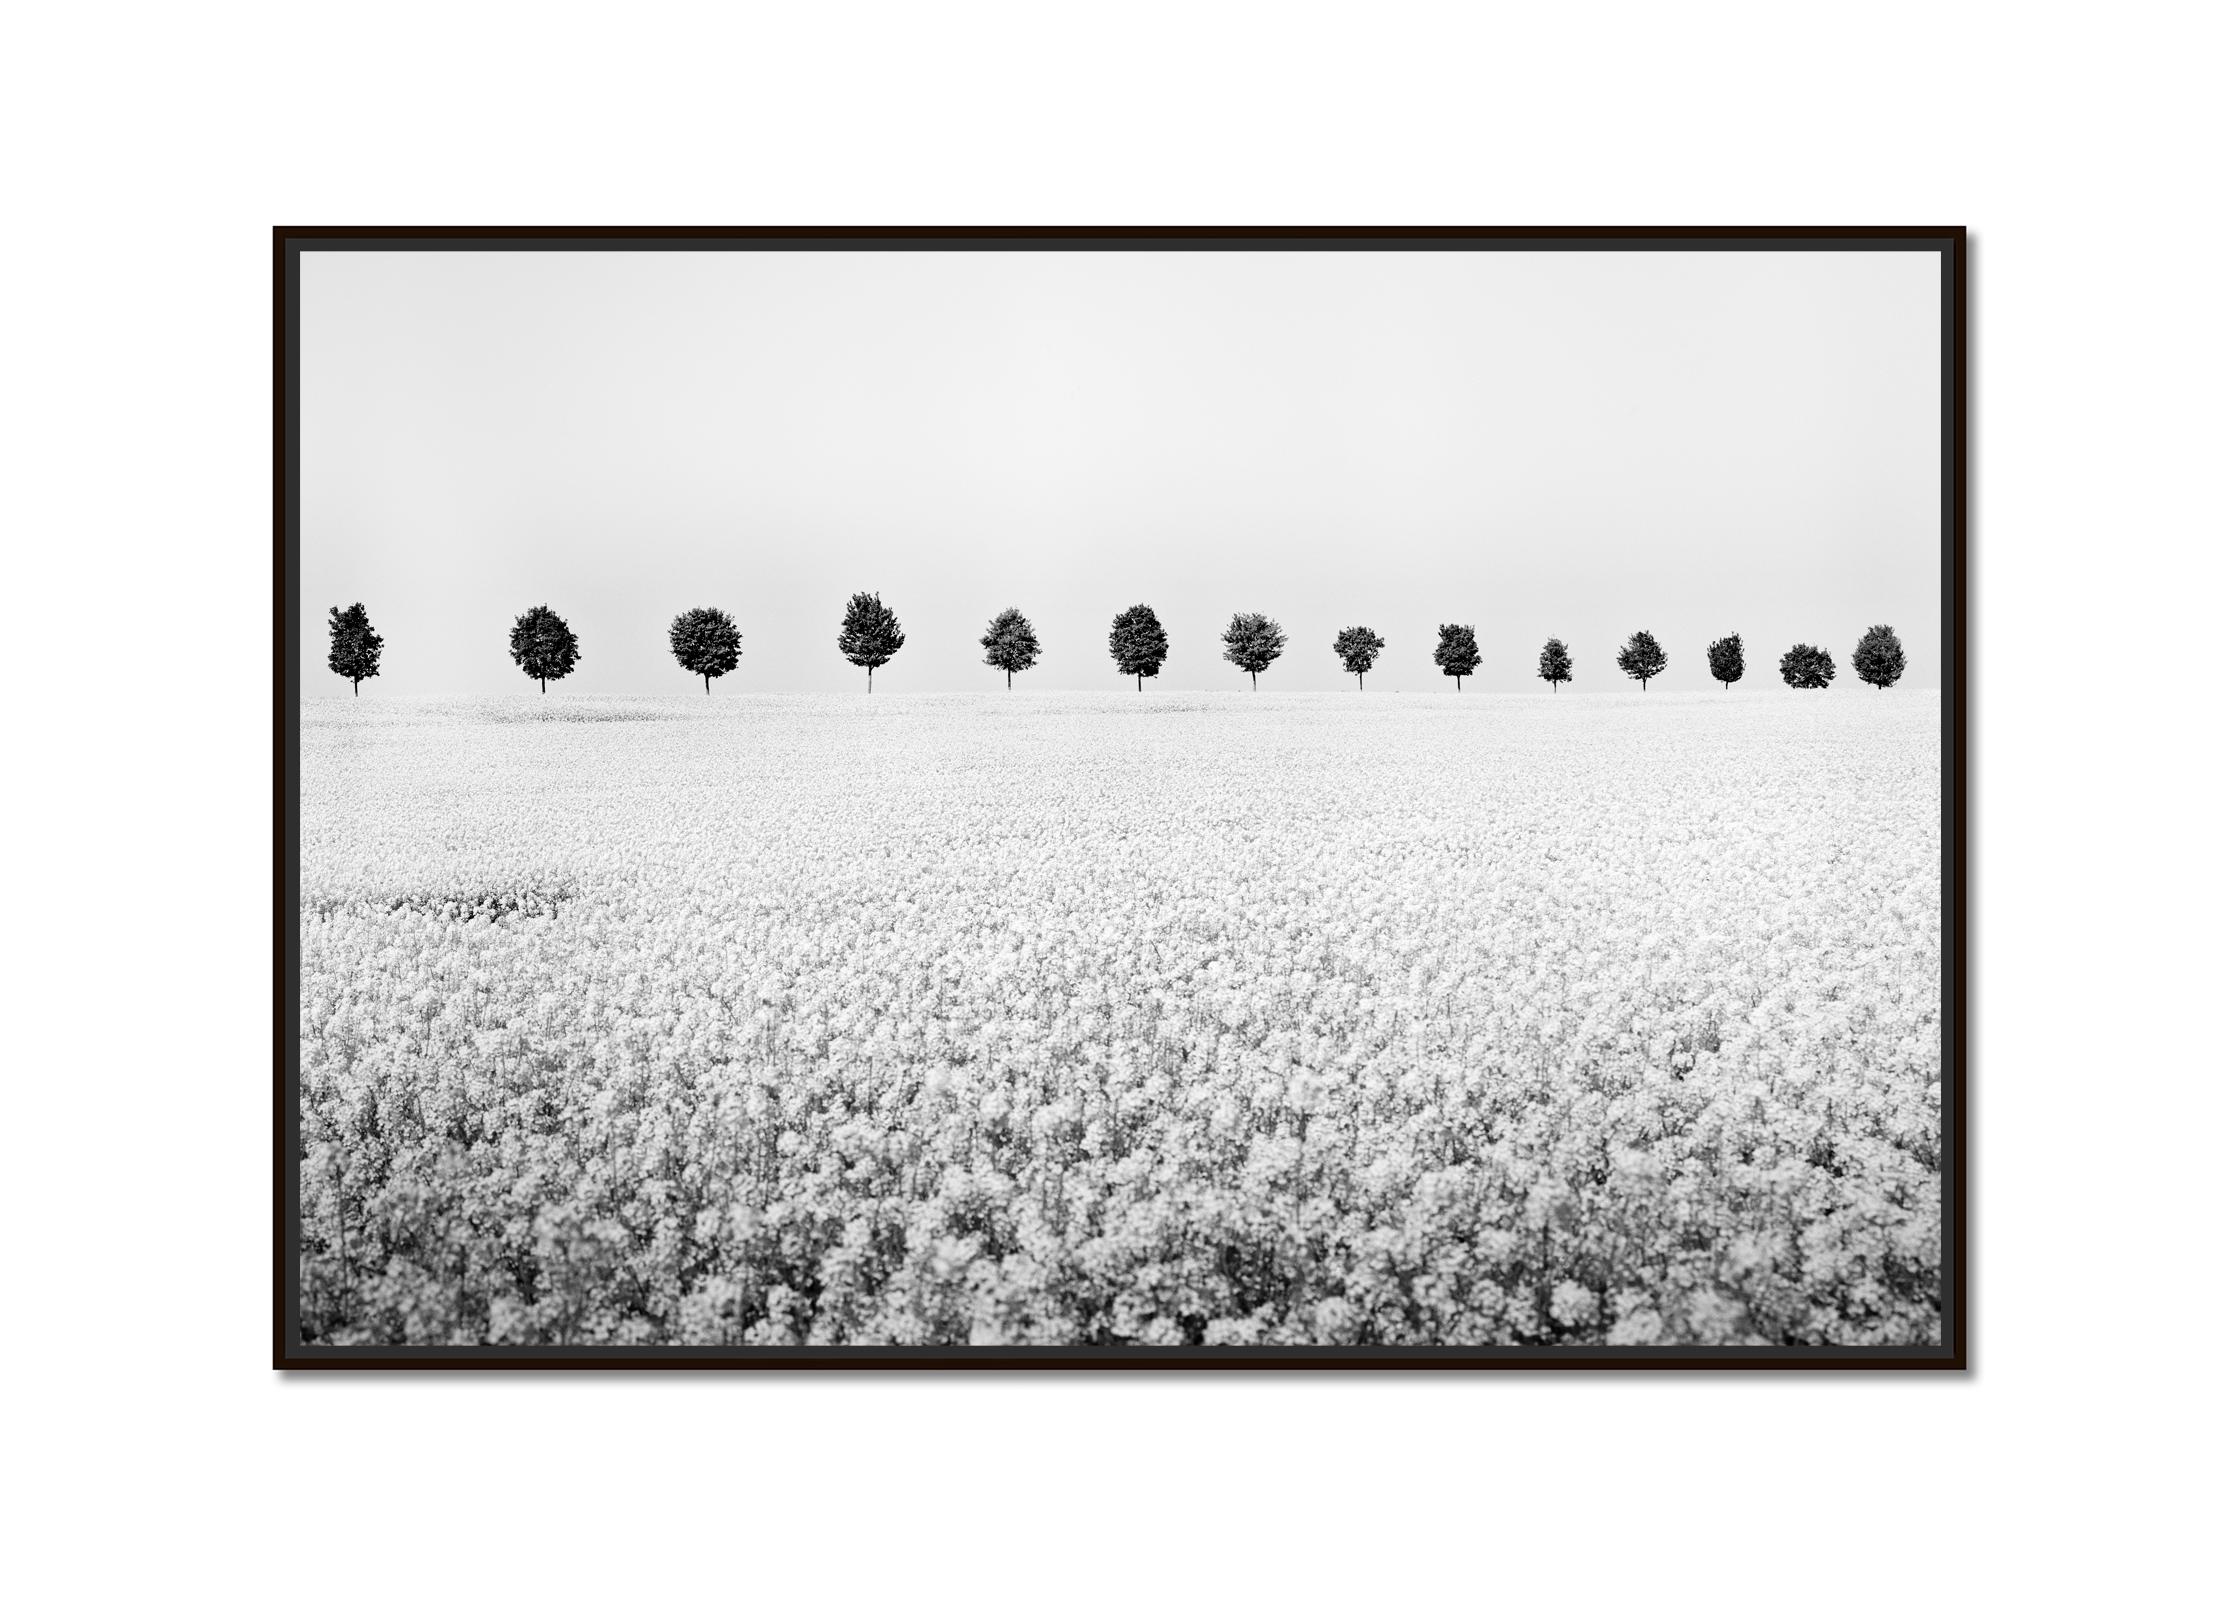 Messingica Napus-Blumenserie in Schwarz-Weiß, minimalistische Landschaftsfotografie – Photograph von Gerald Berghammer